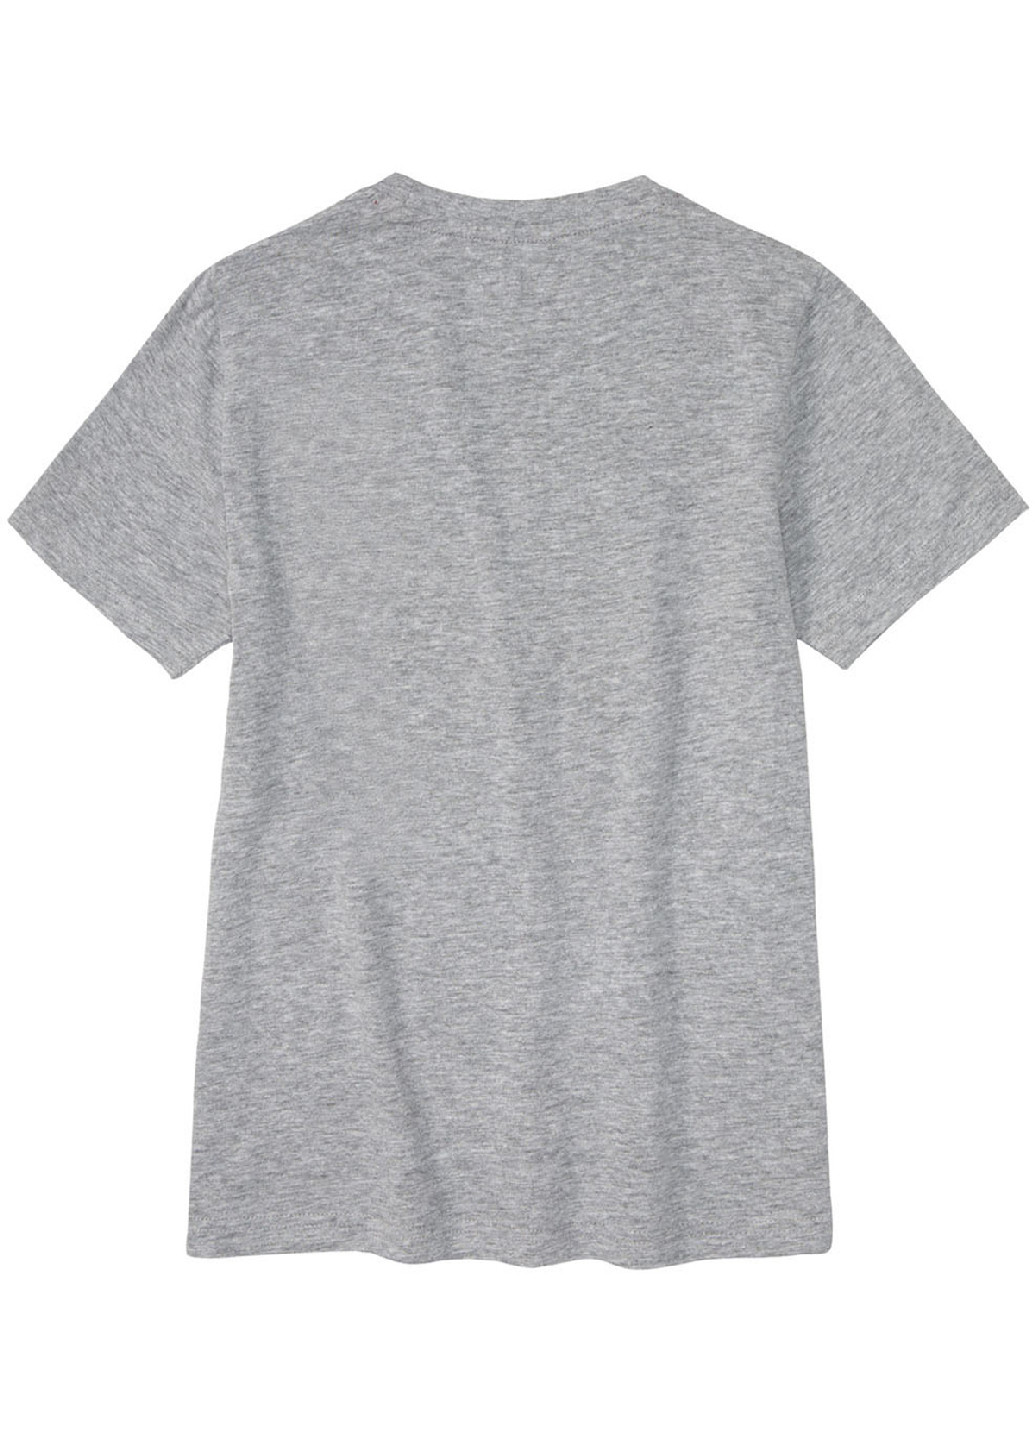 Комбінована всесезон піжама (футболка, шорти) футболка + шорти Pepperts